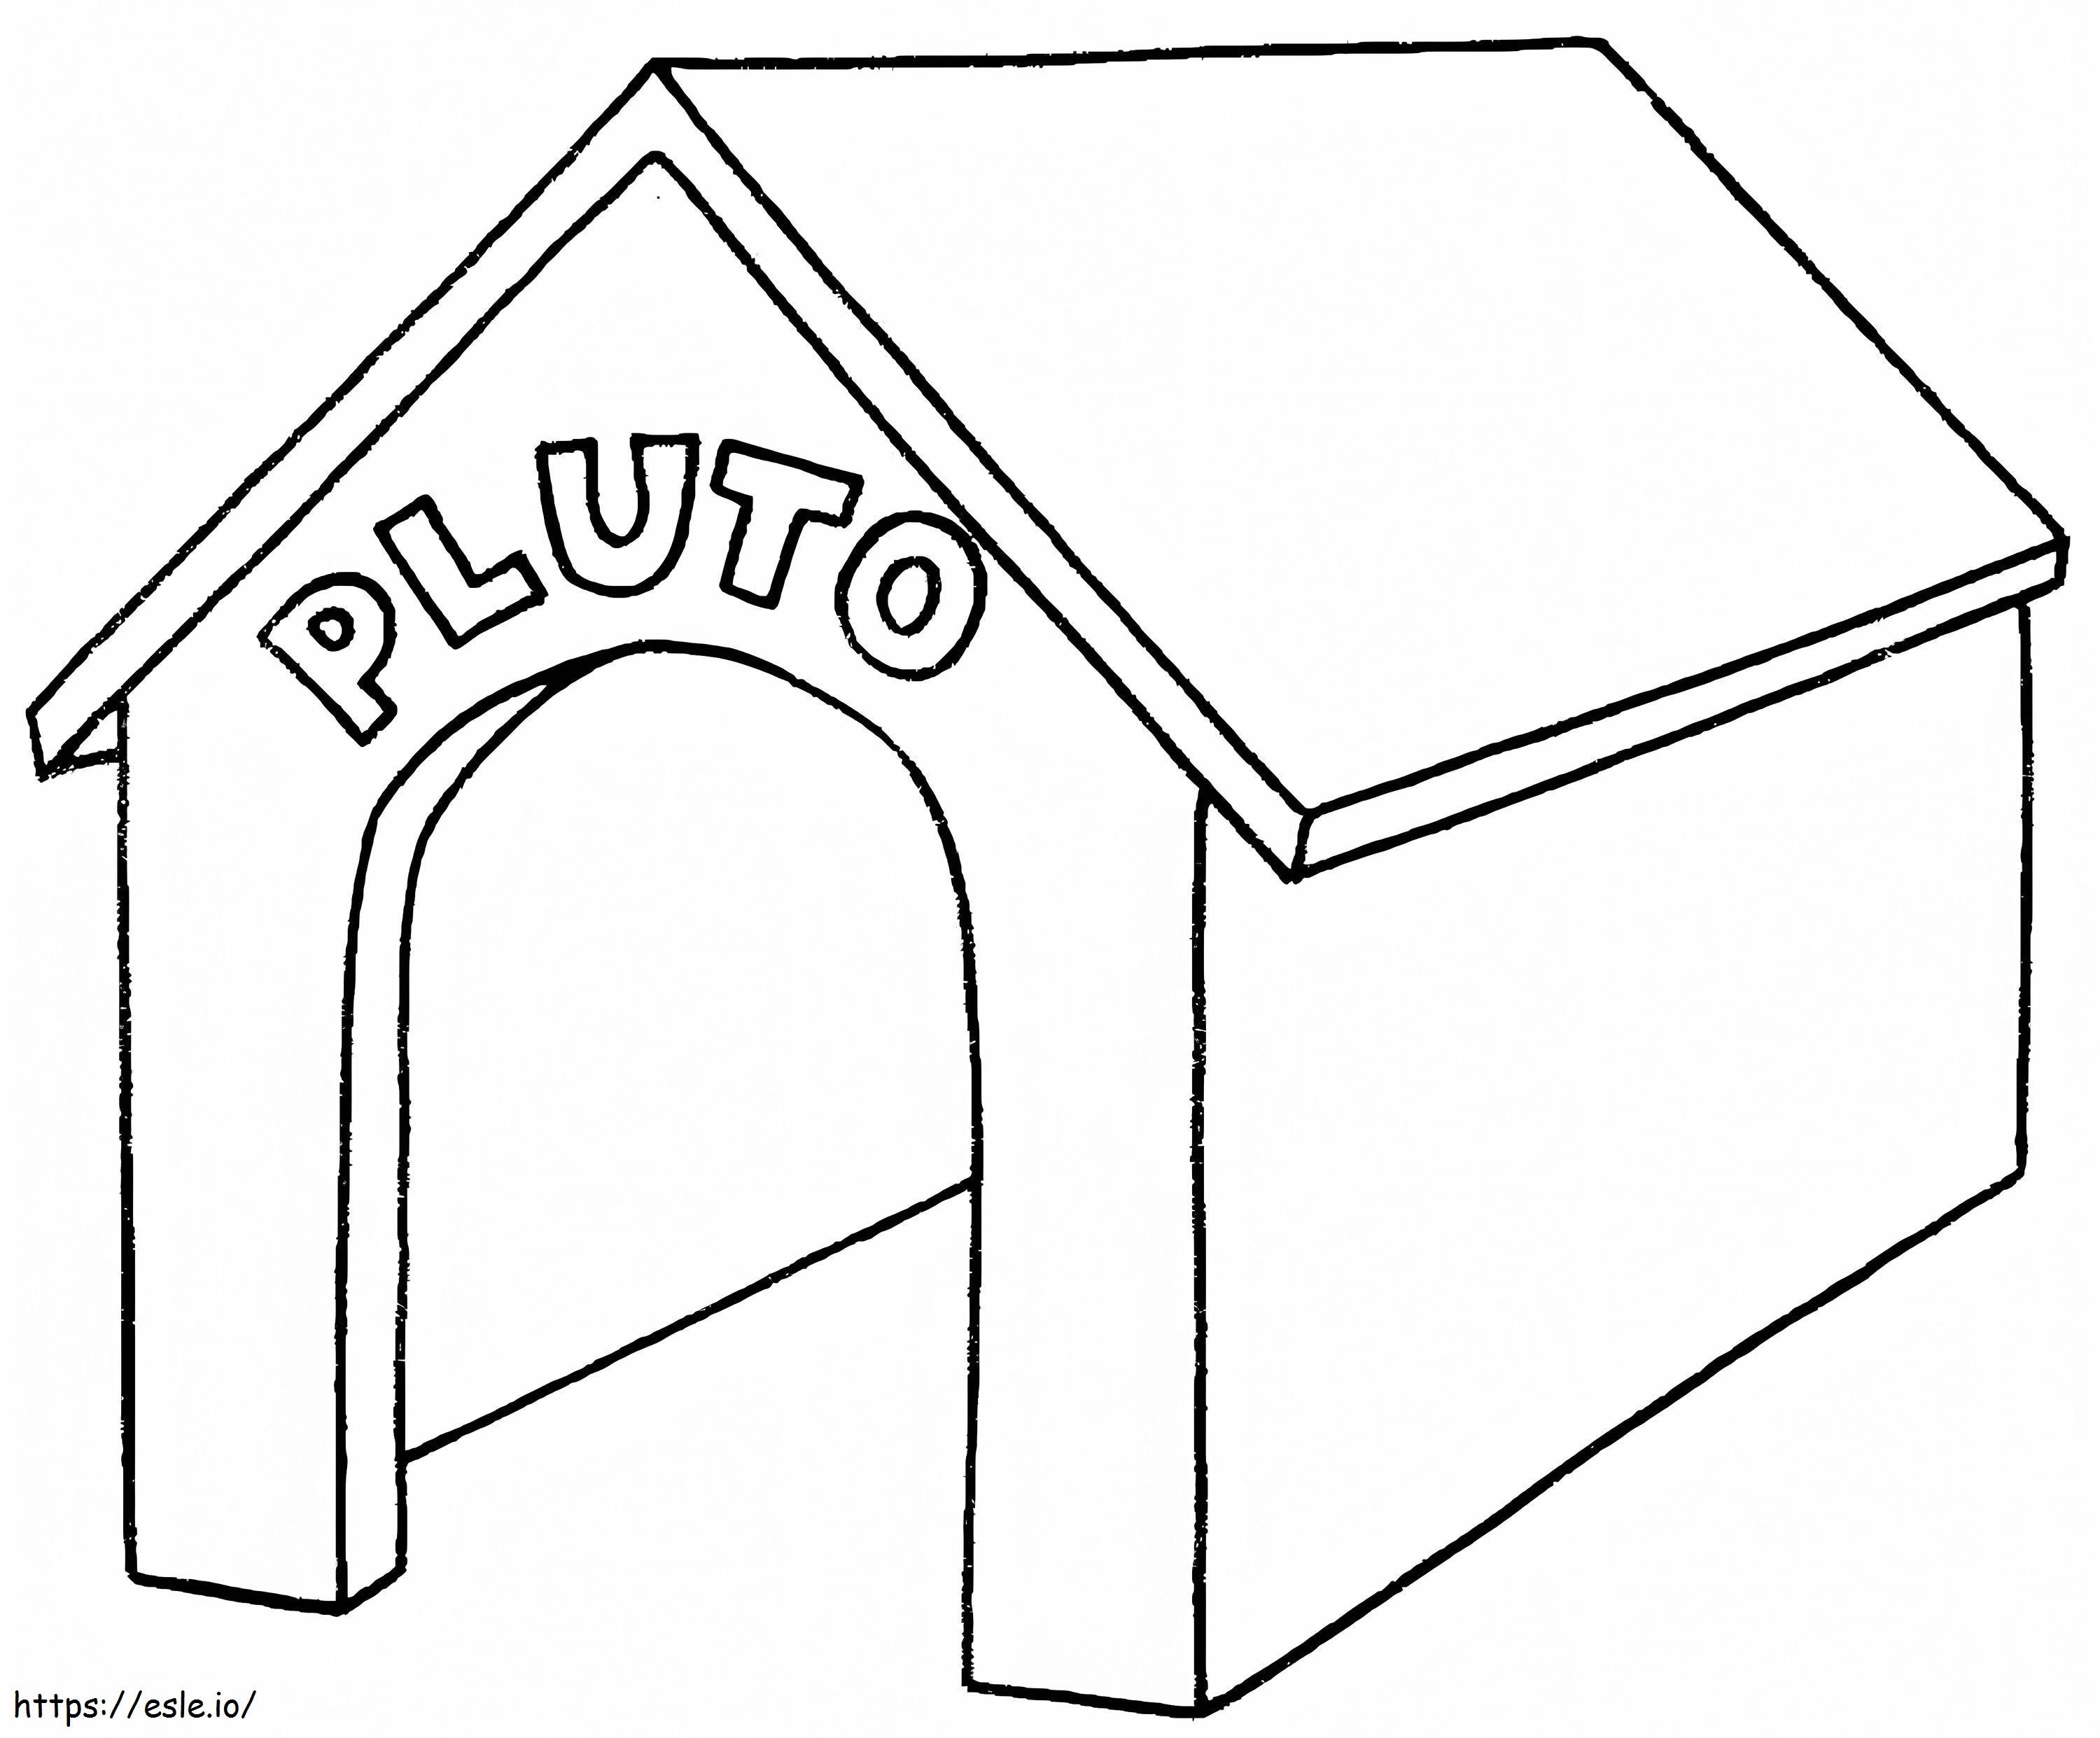 Cuccia per cani Pluto da colorare